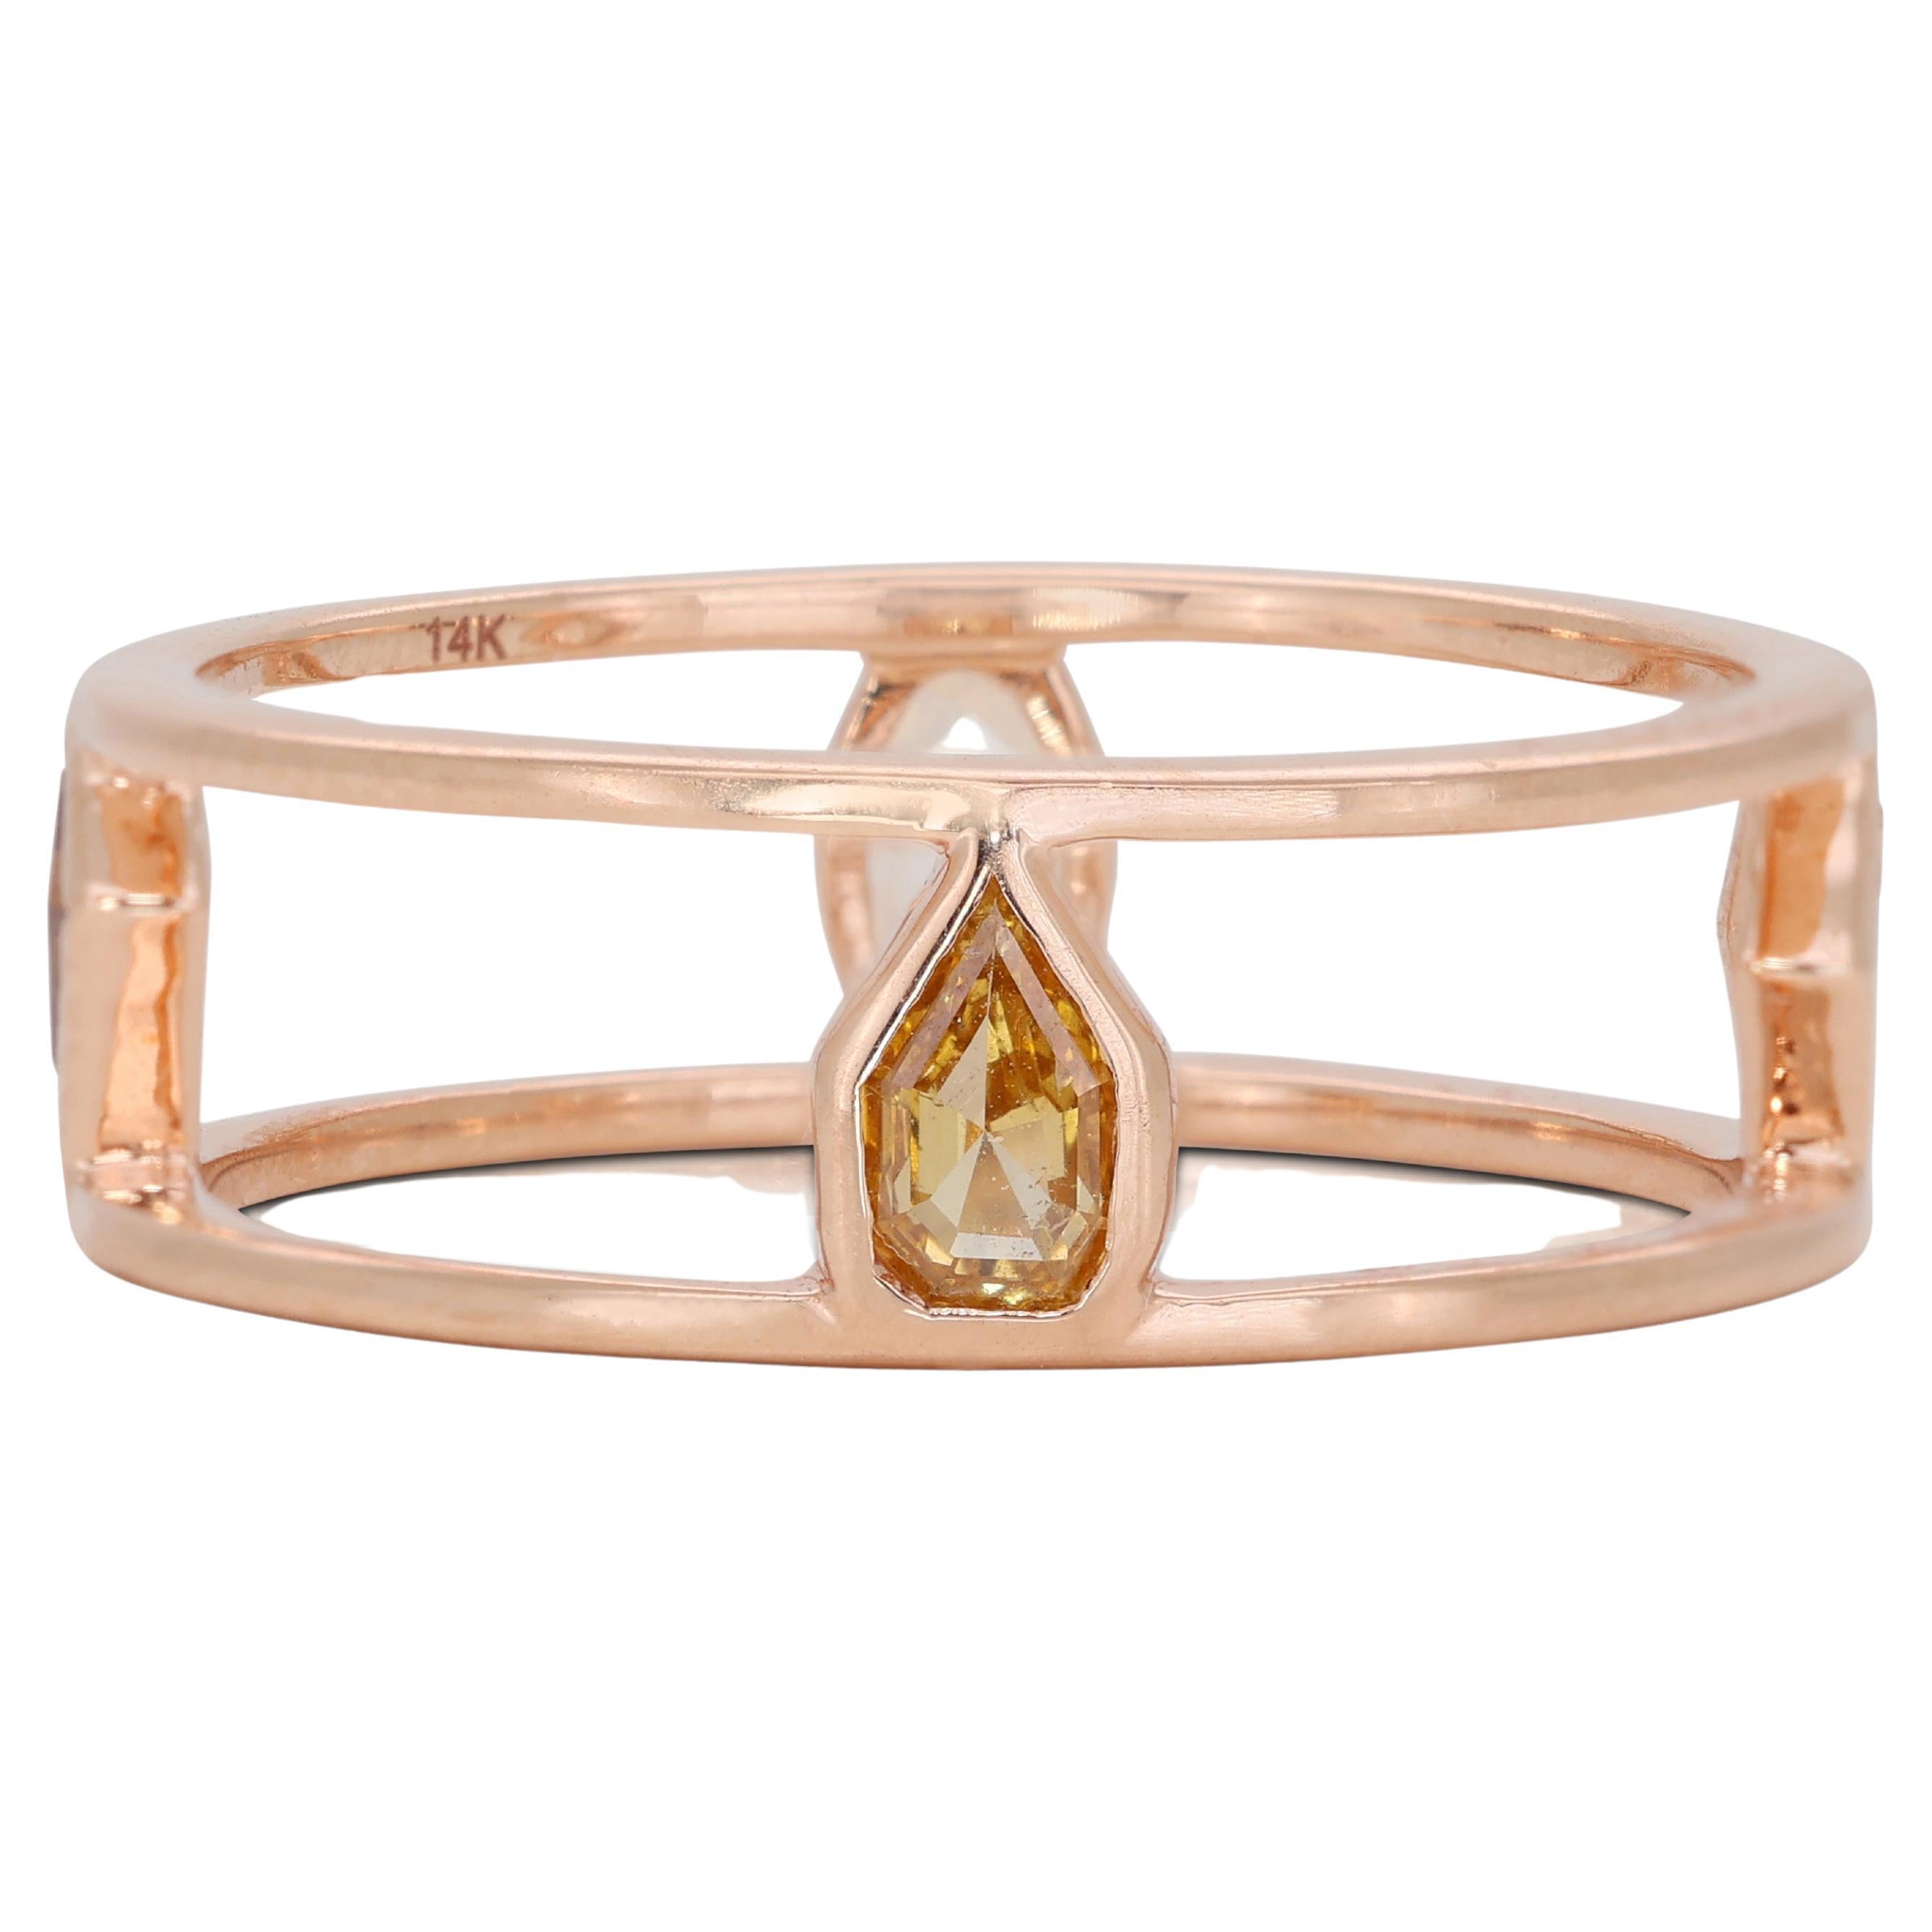 Jolie bague en or rose 14k avec diamant de couleur fantaisie 0,56 ct - certifié IGI